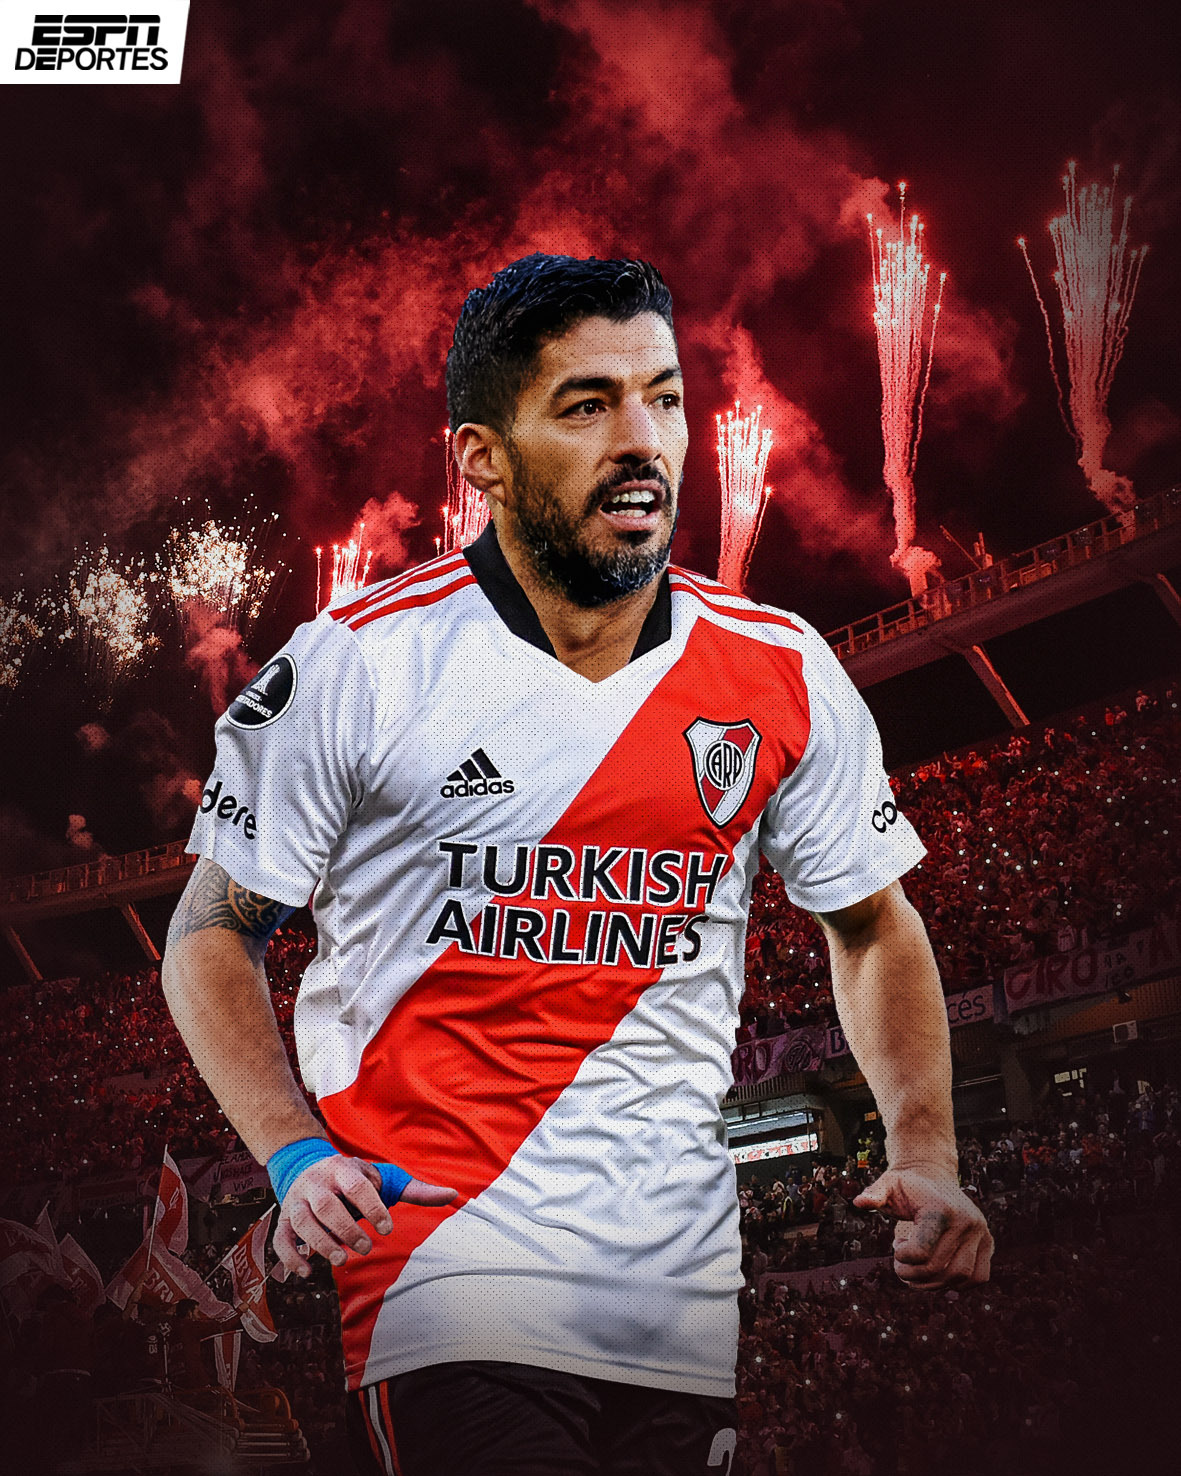 Mantenimiento Agente Arena ESPN Deportes on Twitter: "Luis Suárez estaría en el radar de River Plate  👀 ¿Es una buena opción para 'El Pistolero'? https://t.co/heeDfvH4pF" /  Twitter